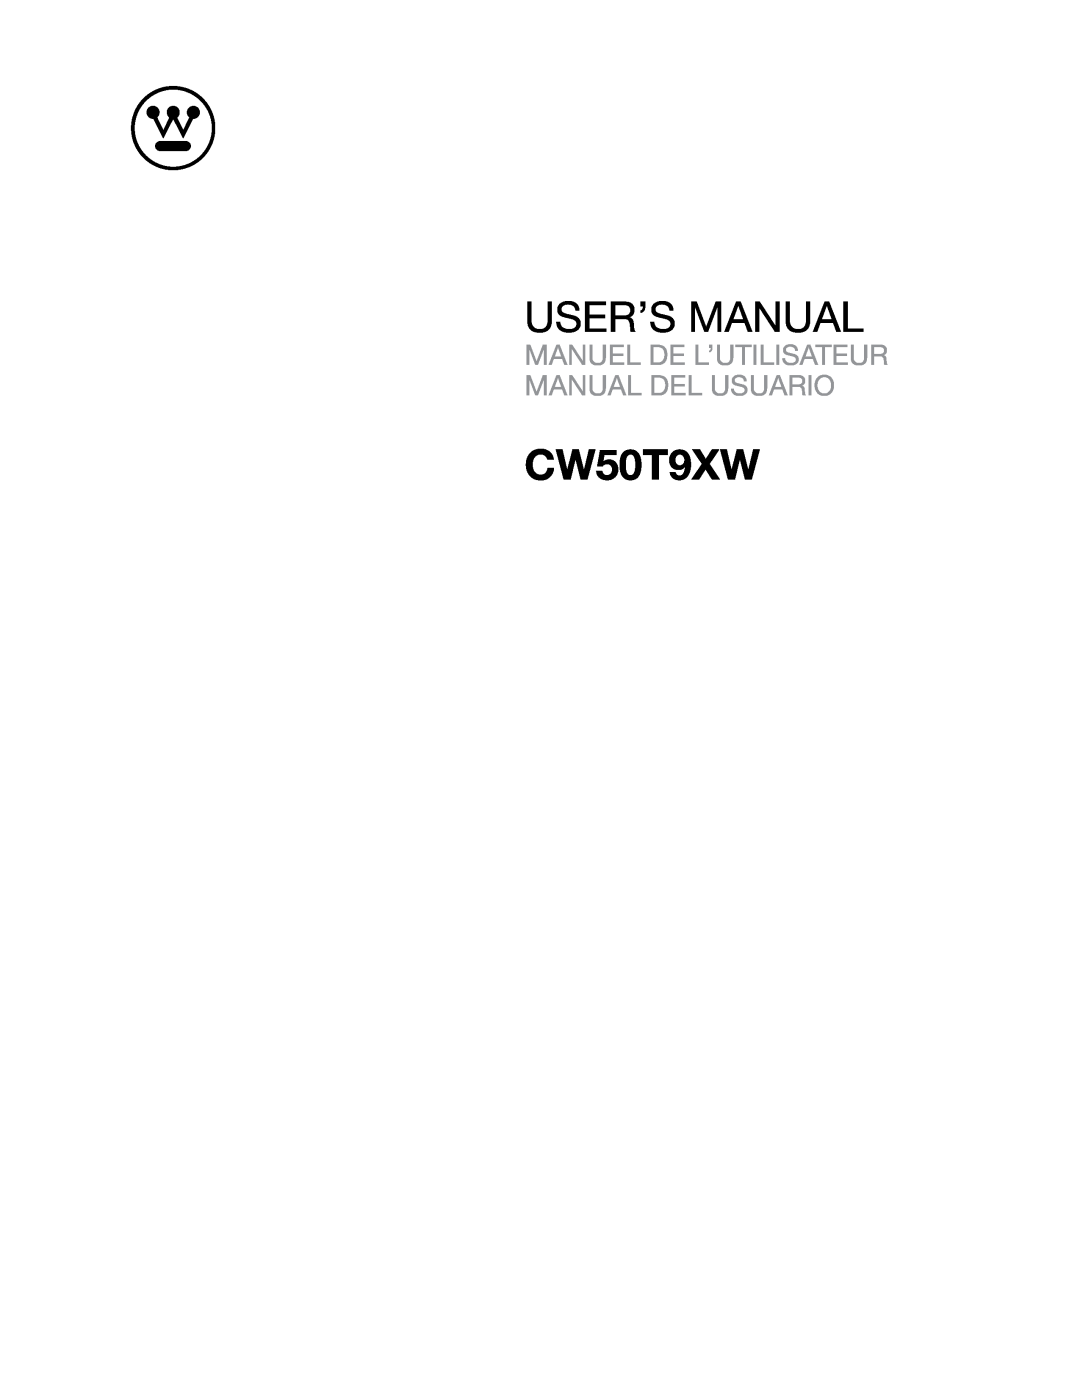 Westinghouse CW50T9XW user manual User’S Manual, Manuel De L’Utilisateur Manual Del Usuario 